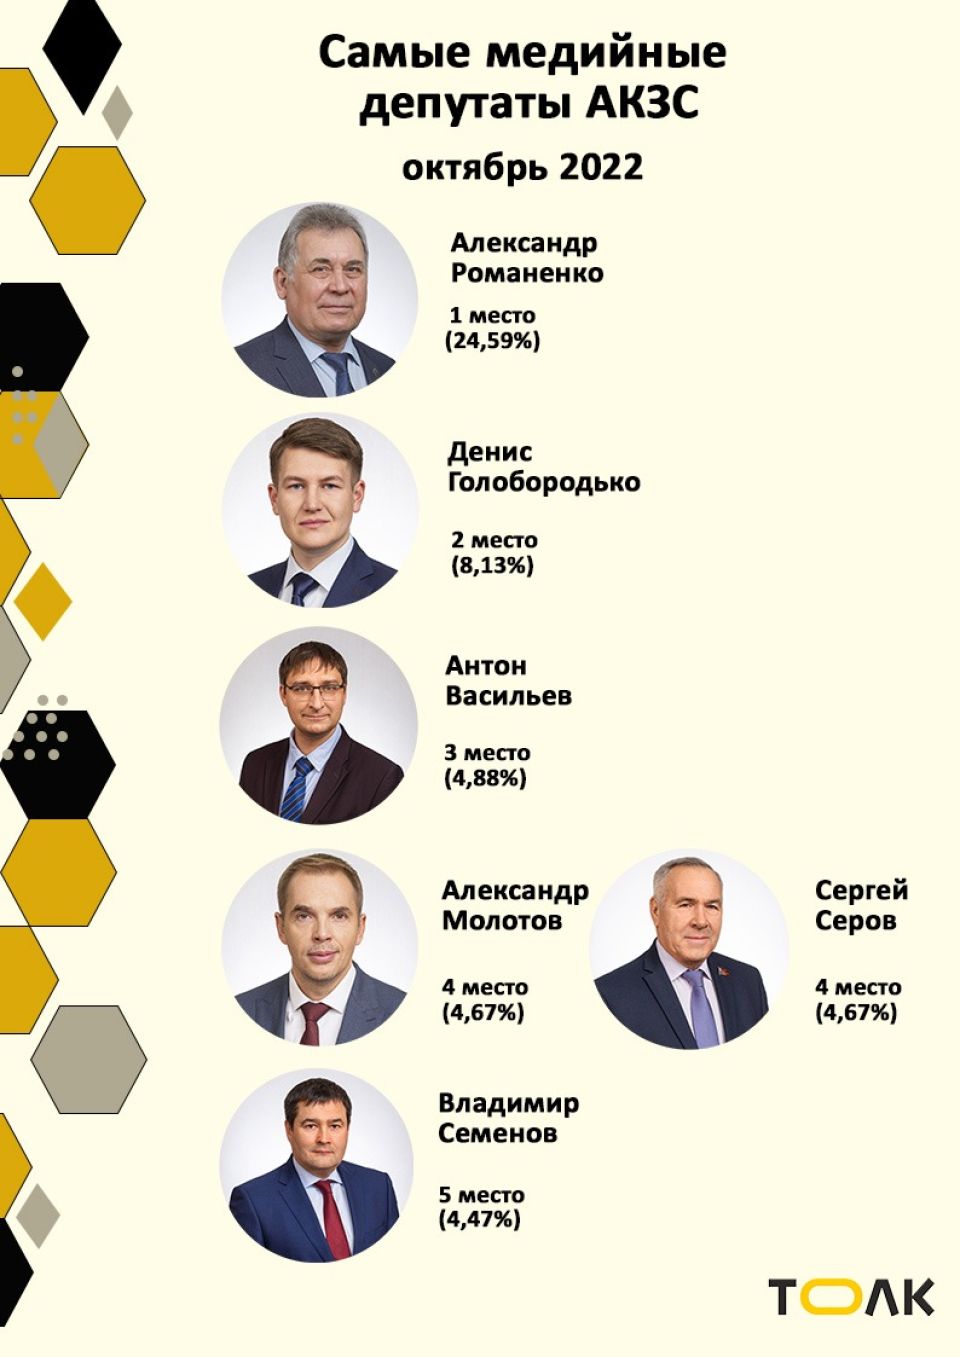 Рейтинг медийности депутатов АКЗС в октябре 2022 года